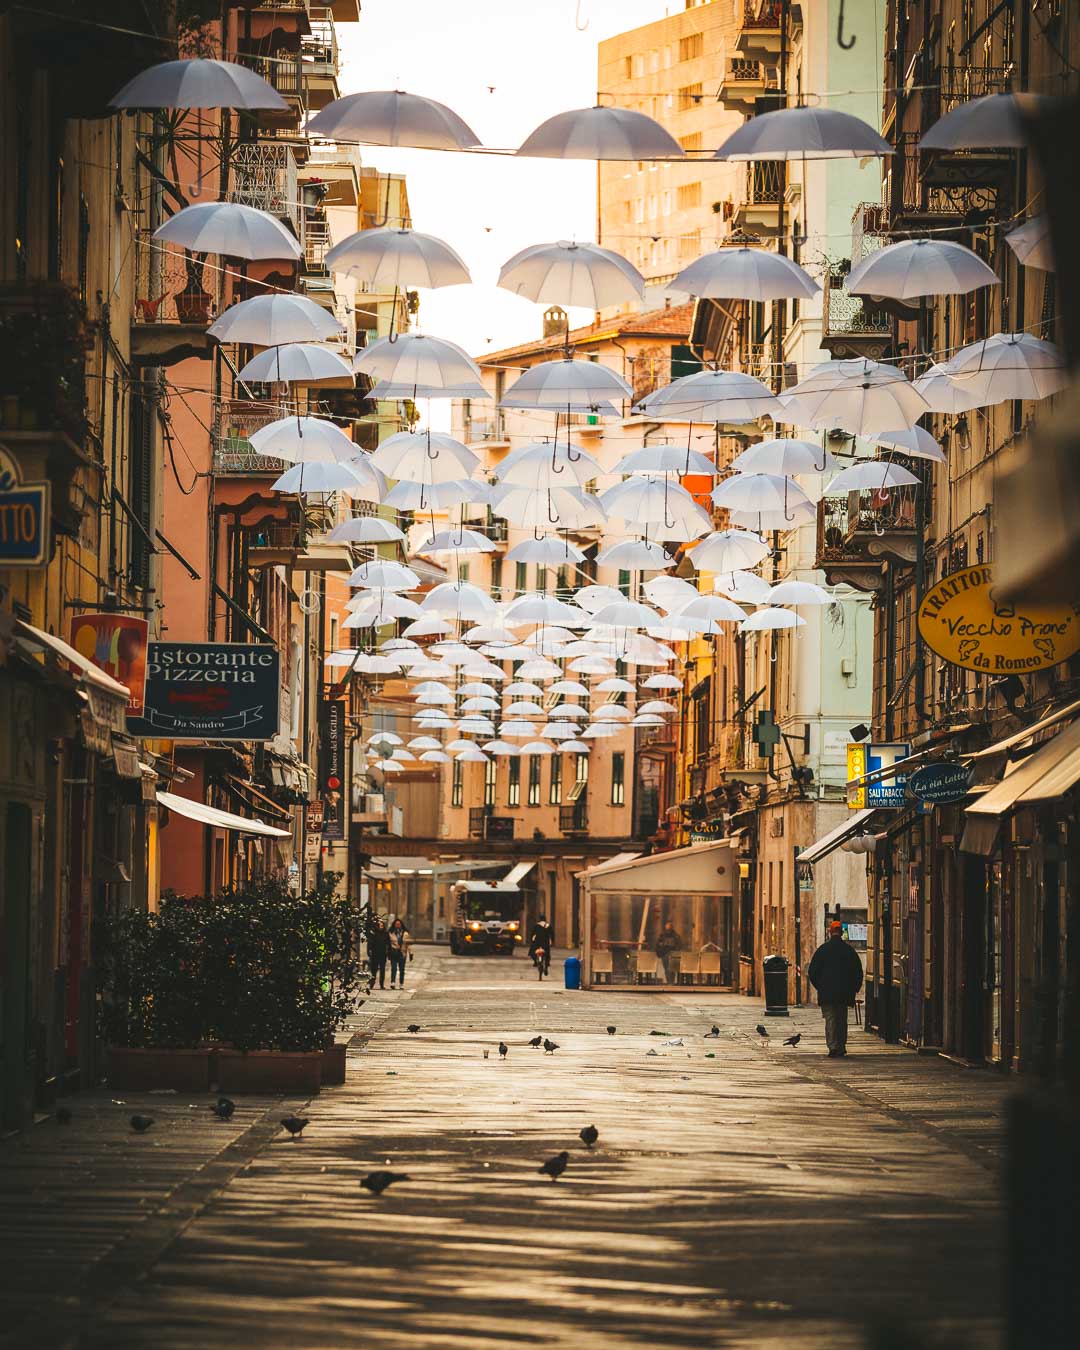 umbrellas of la spezia